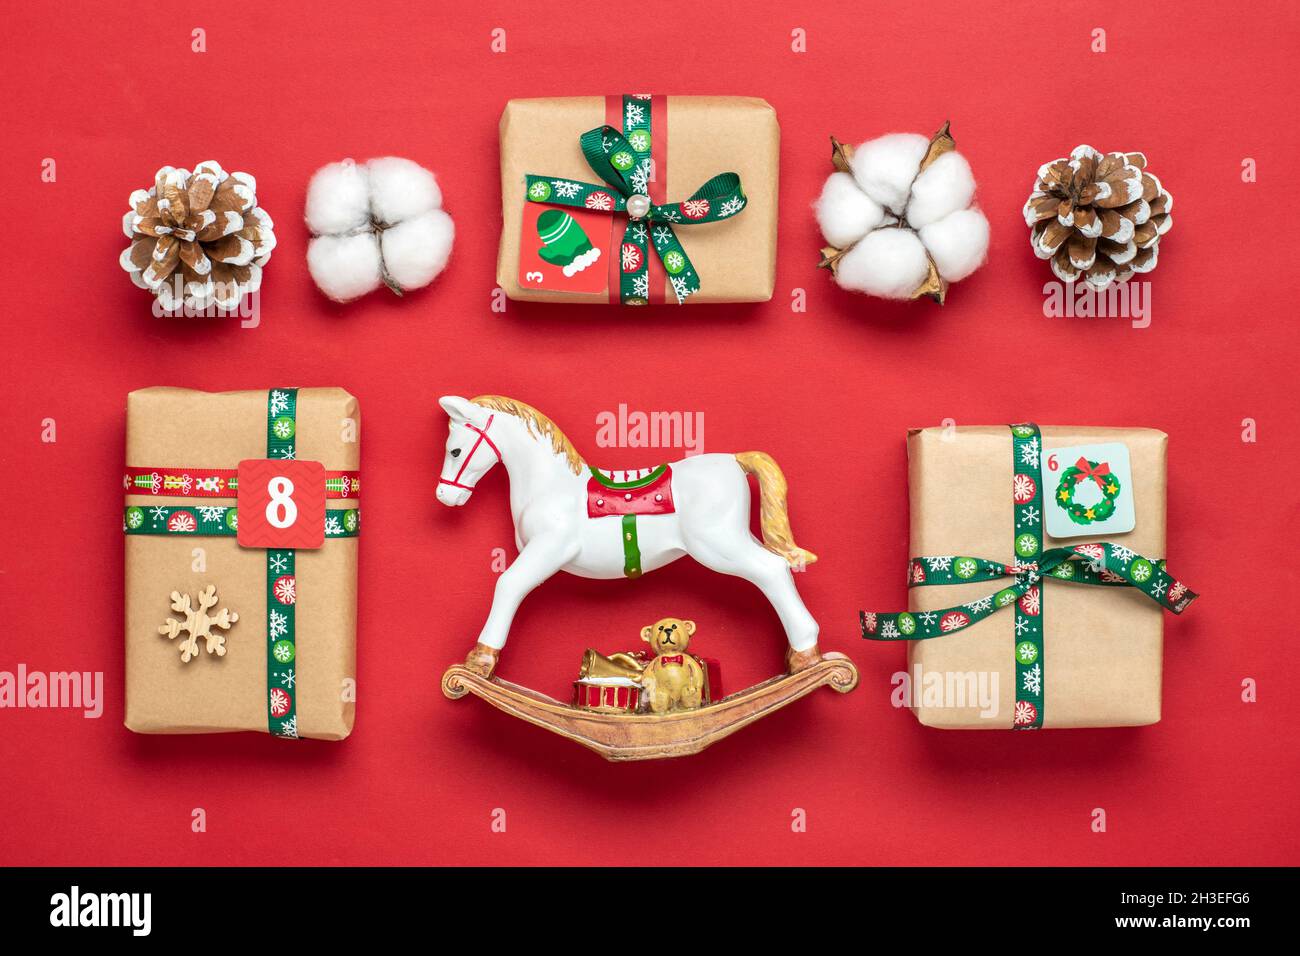 Scatole regalo rosse, verdi e confezionate a mano decorate con nastri,  fiocchi di neve e numeri, decorazioni natalizie e decorazioni su tavola  Calendario avvento natalizio c Foto stock - Alamy